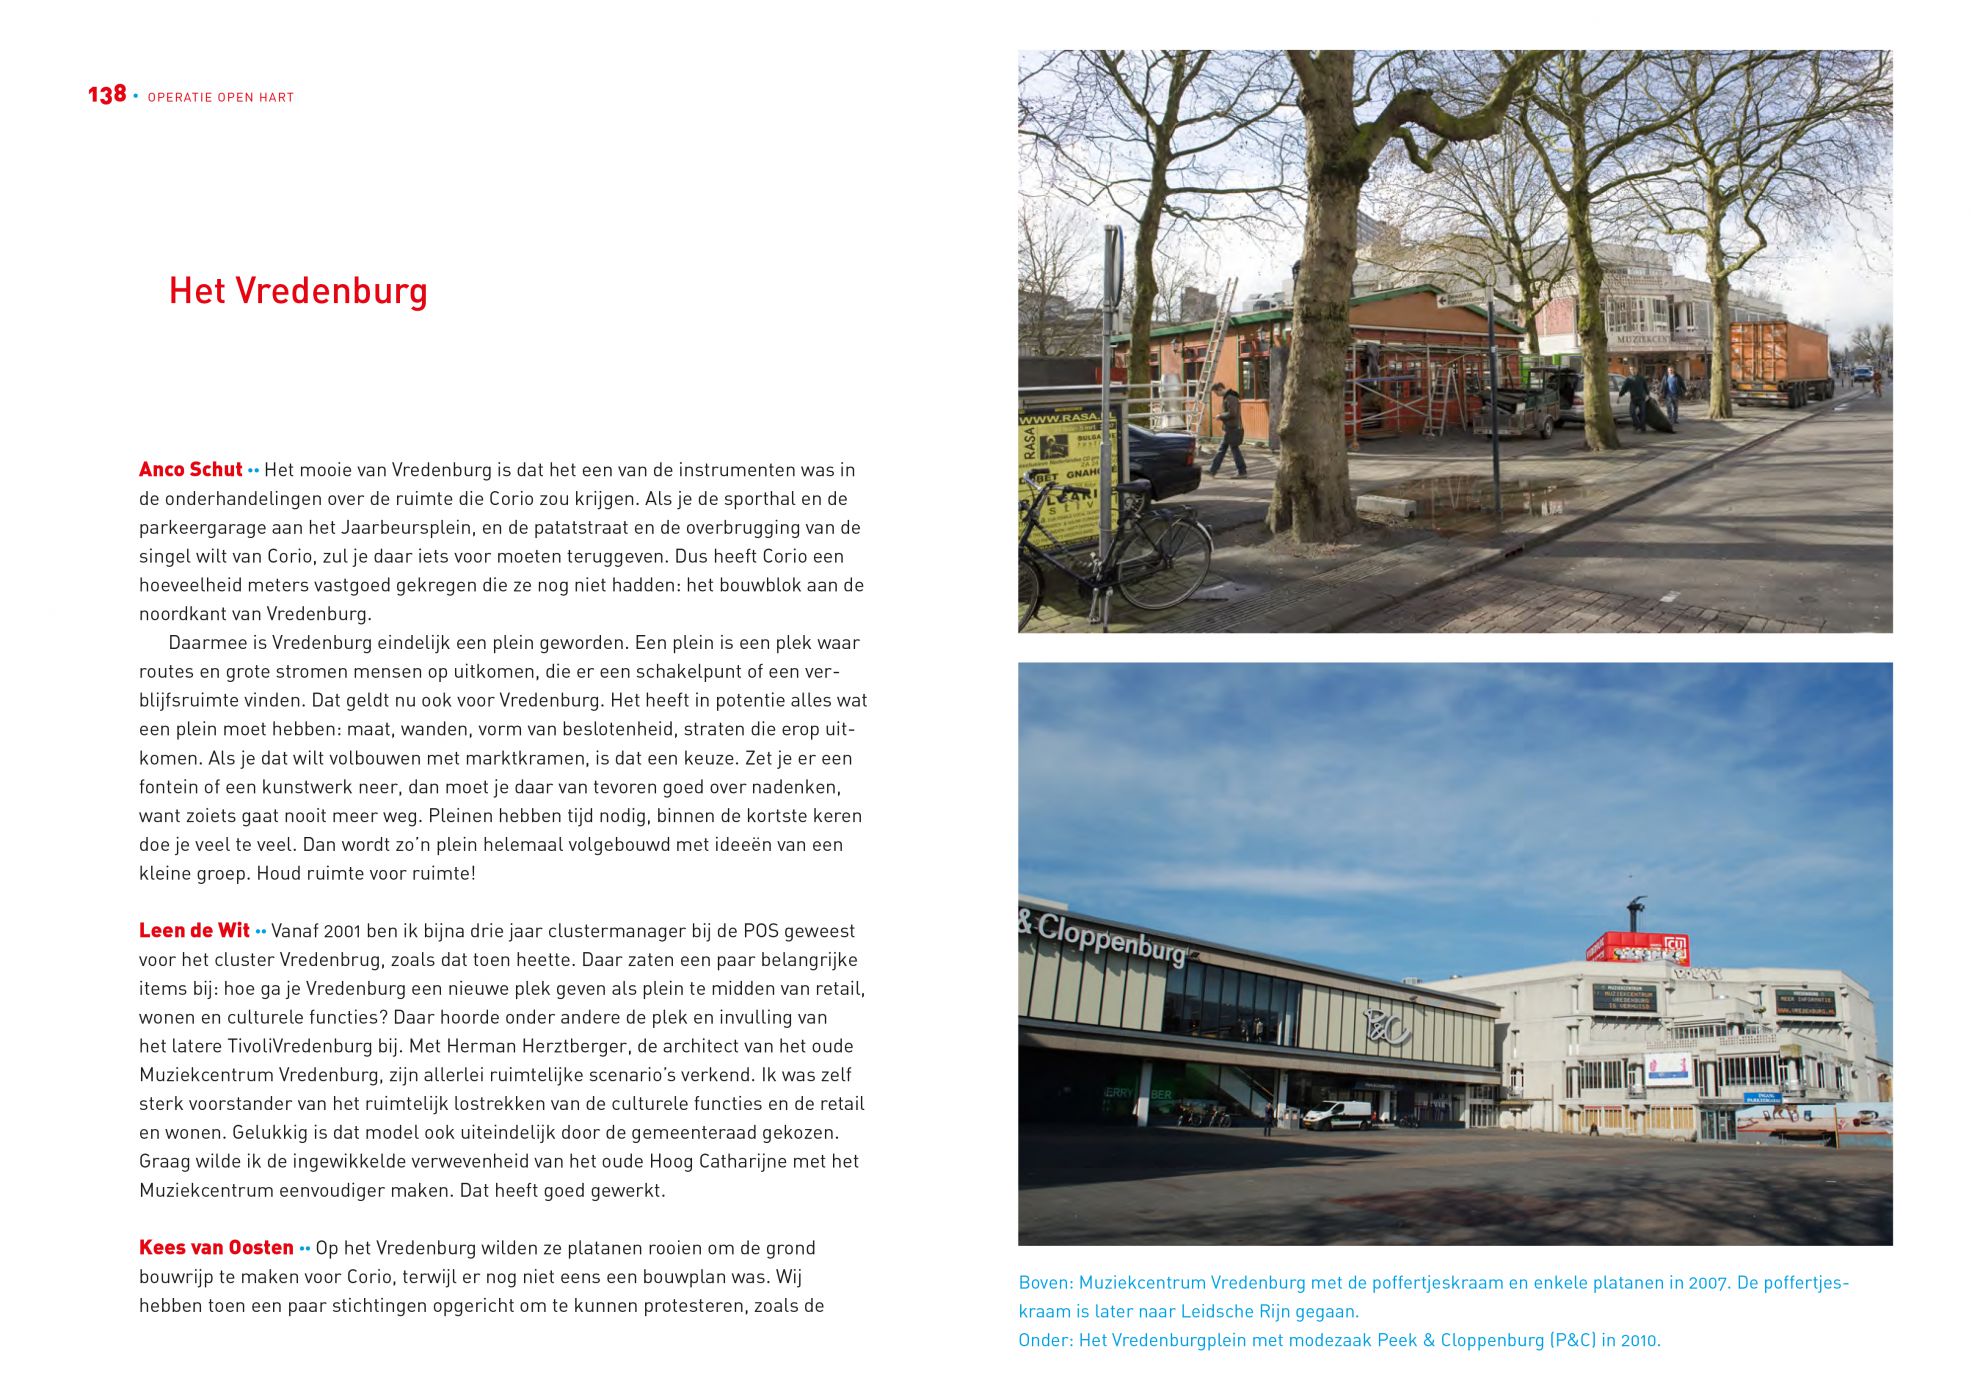 Inkijkexemplaar van het boek: <em>Operatie open hart. Twintig jaar bouwen aan het Stationsgebied Utrecht</em> - © Uitgeverij Matrijs